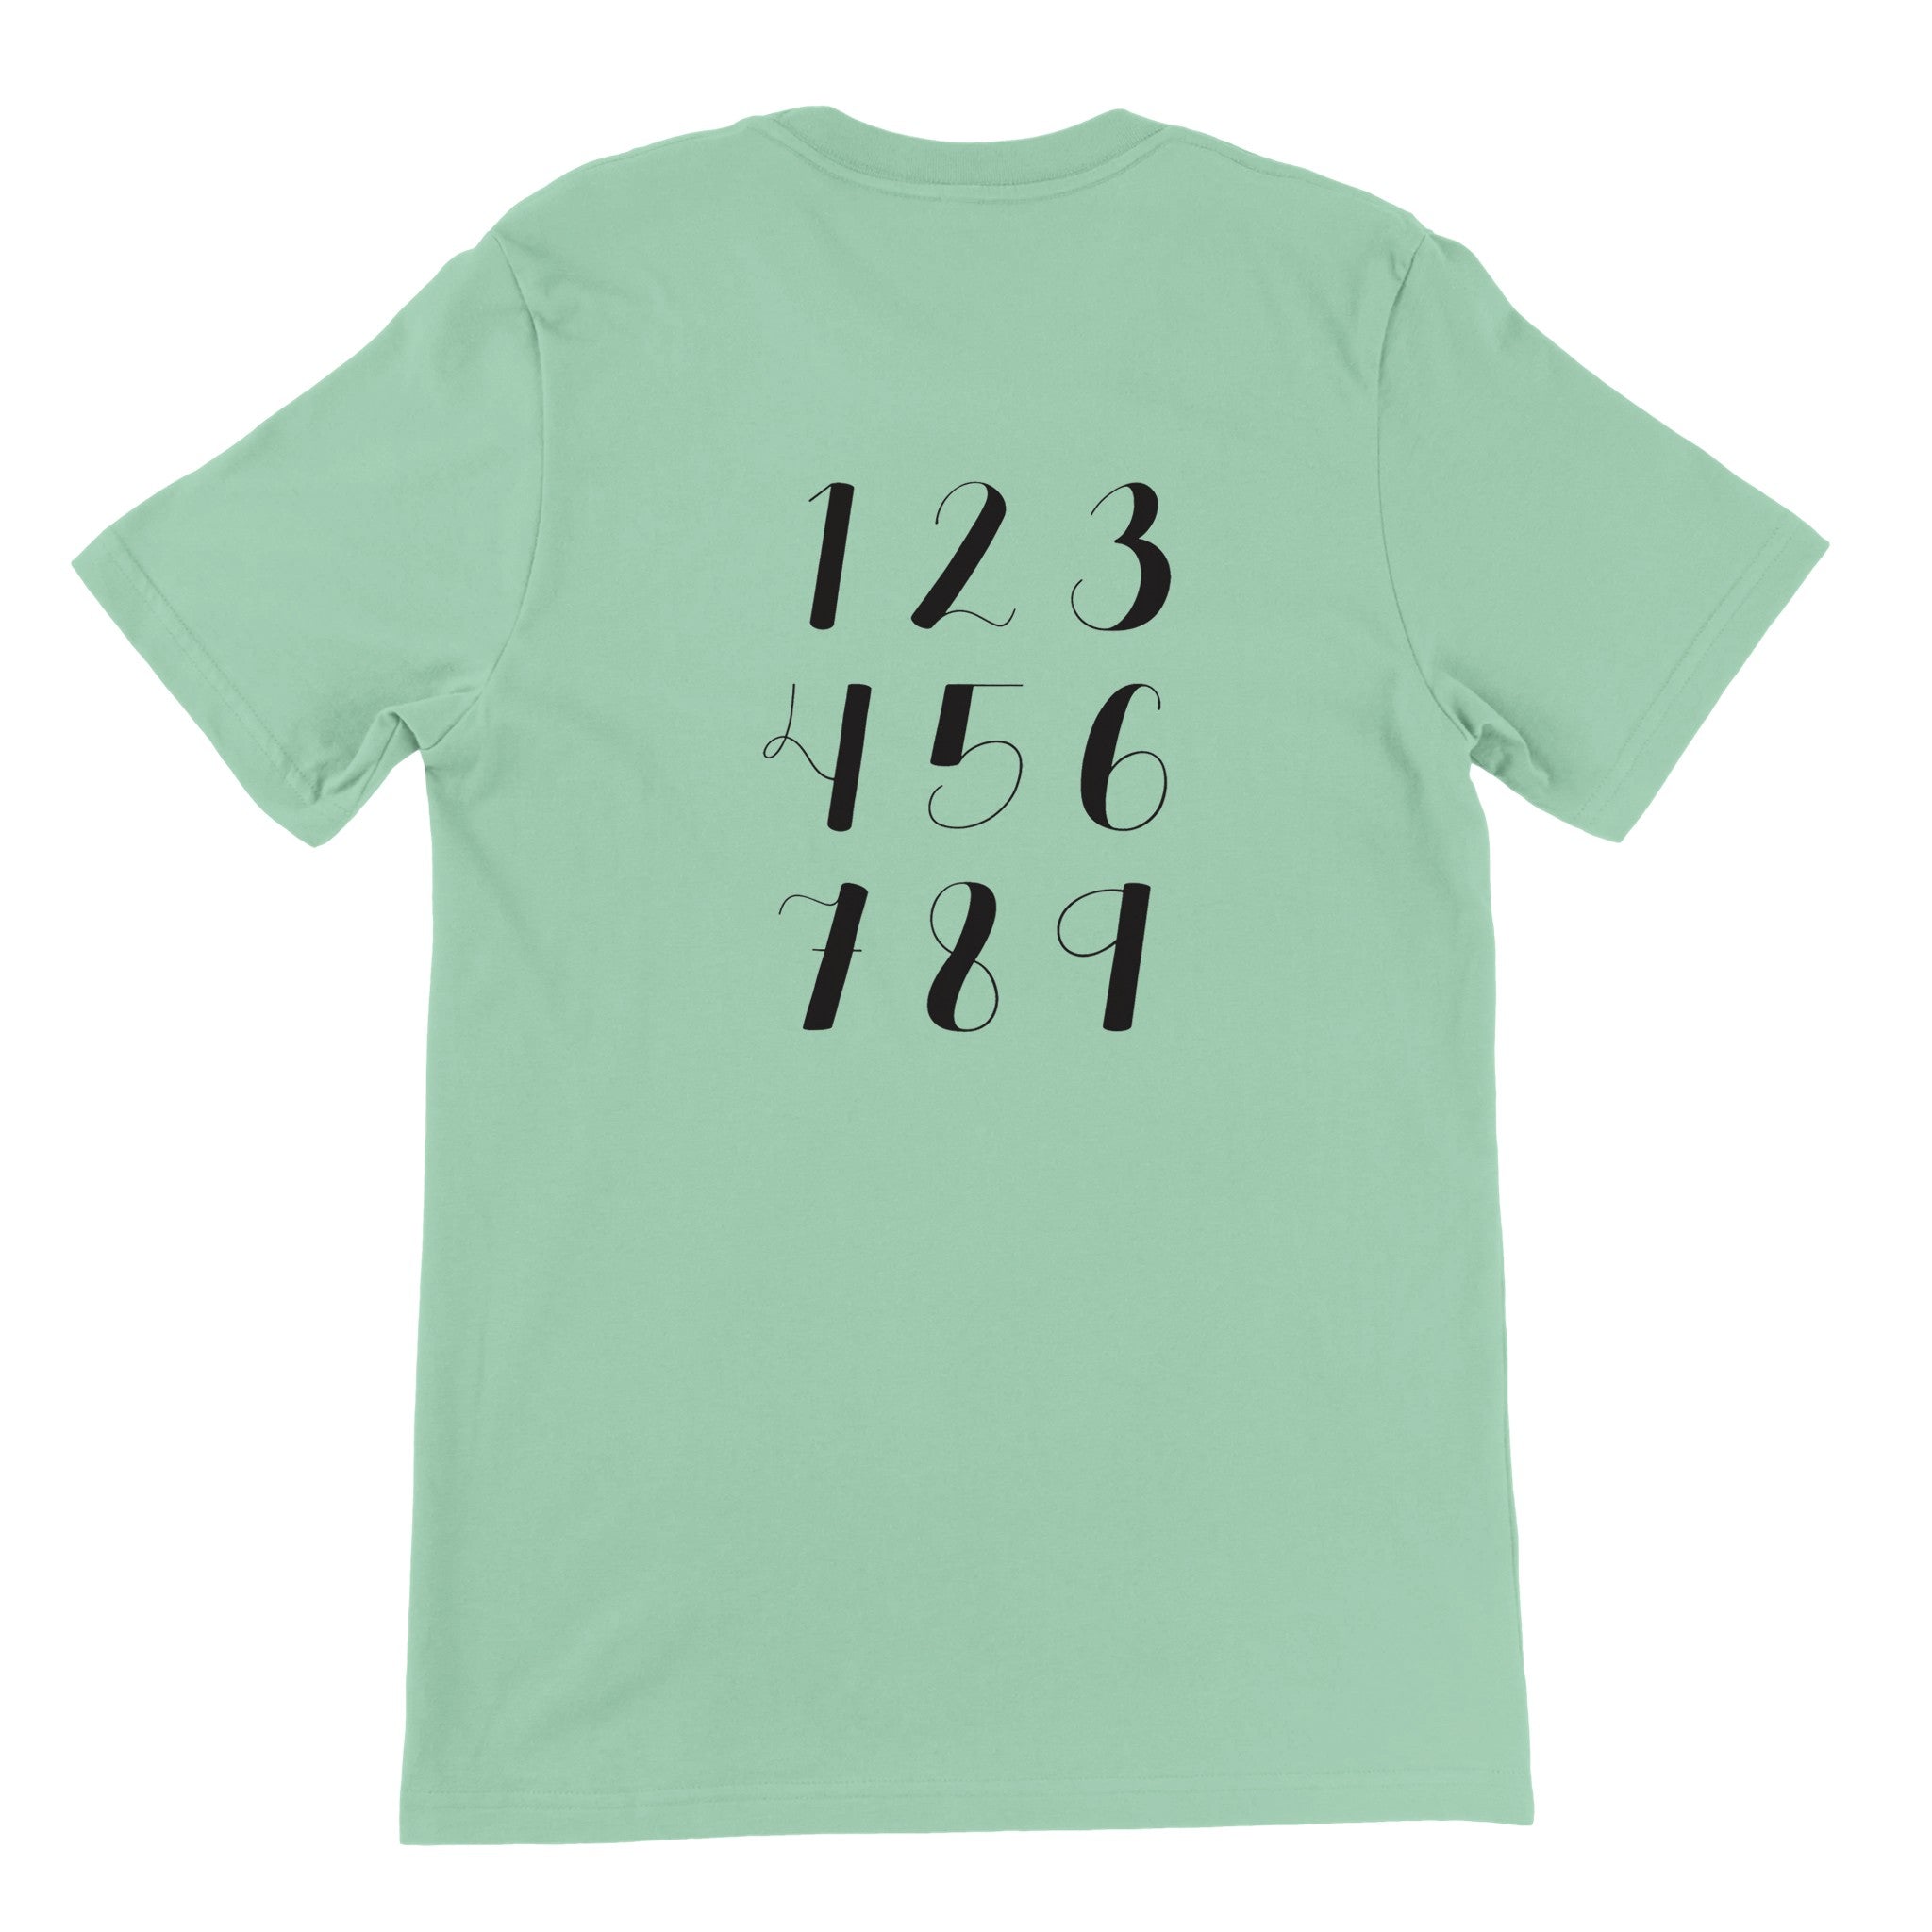 One To Nine Crewneck T-shirt - Optimalprint